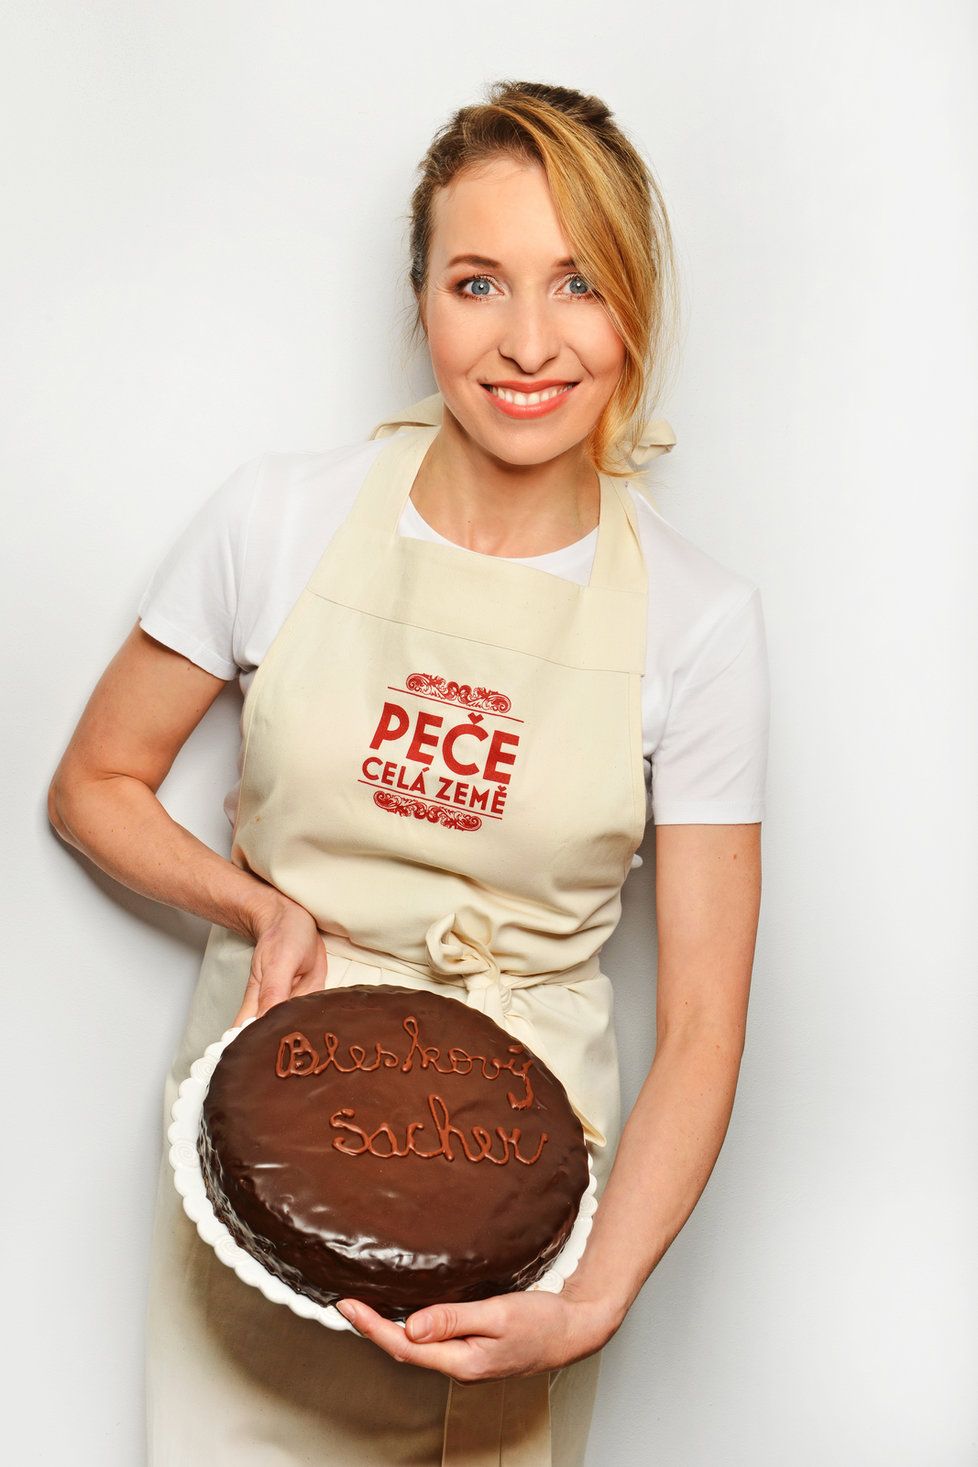 Tereza Bebarová kývla na moderování v kuchařské show Peče celá země.